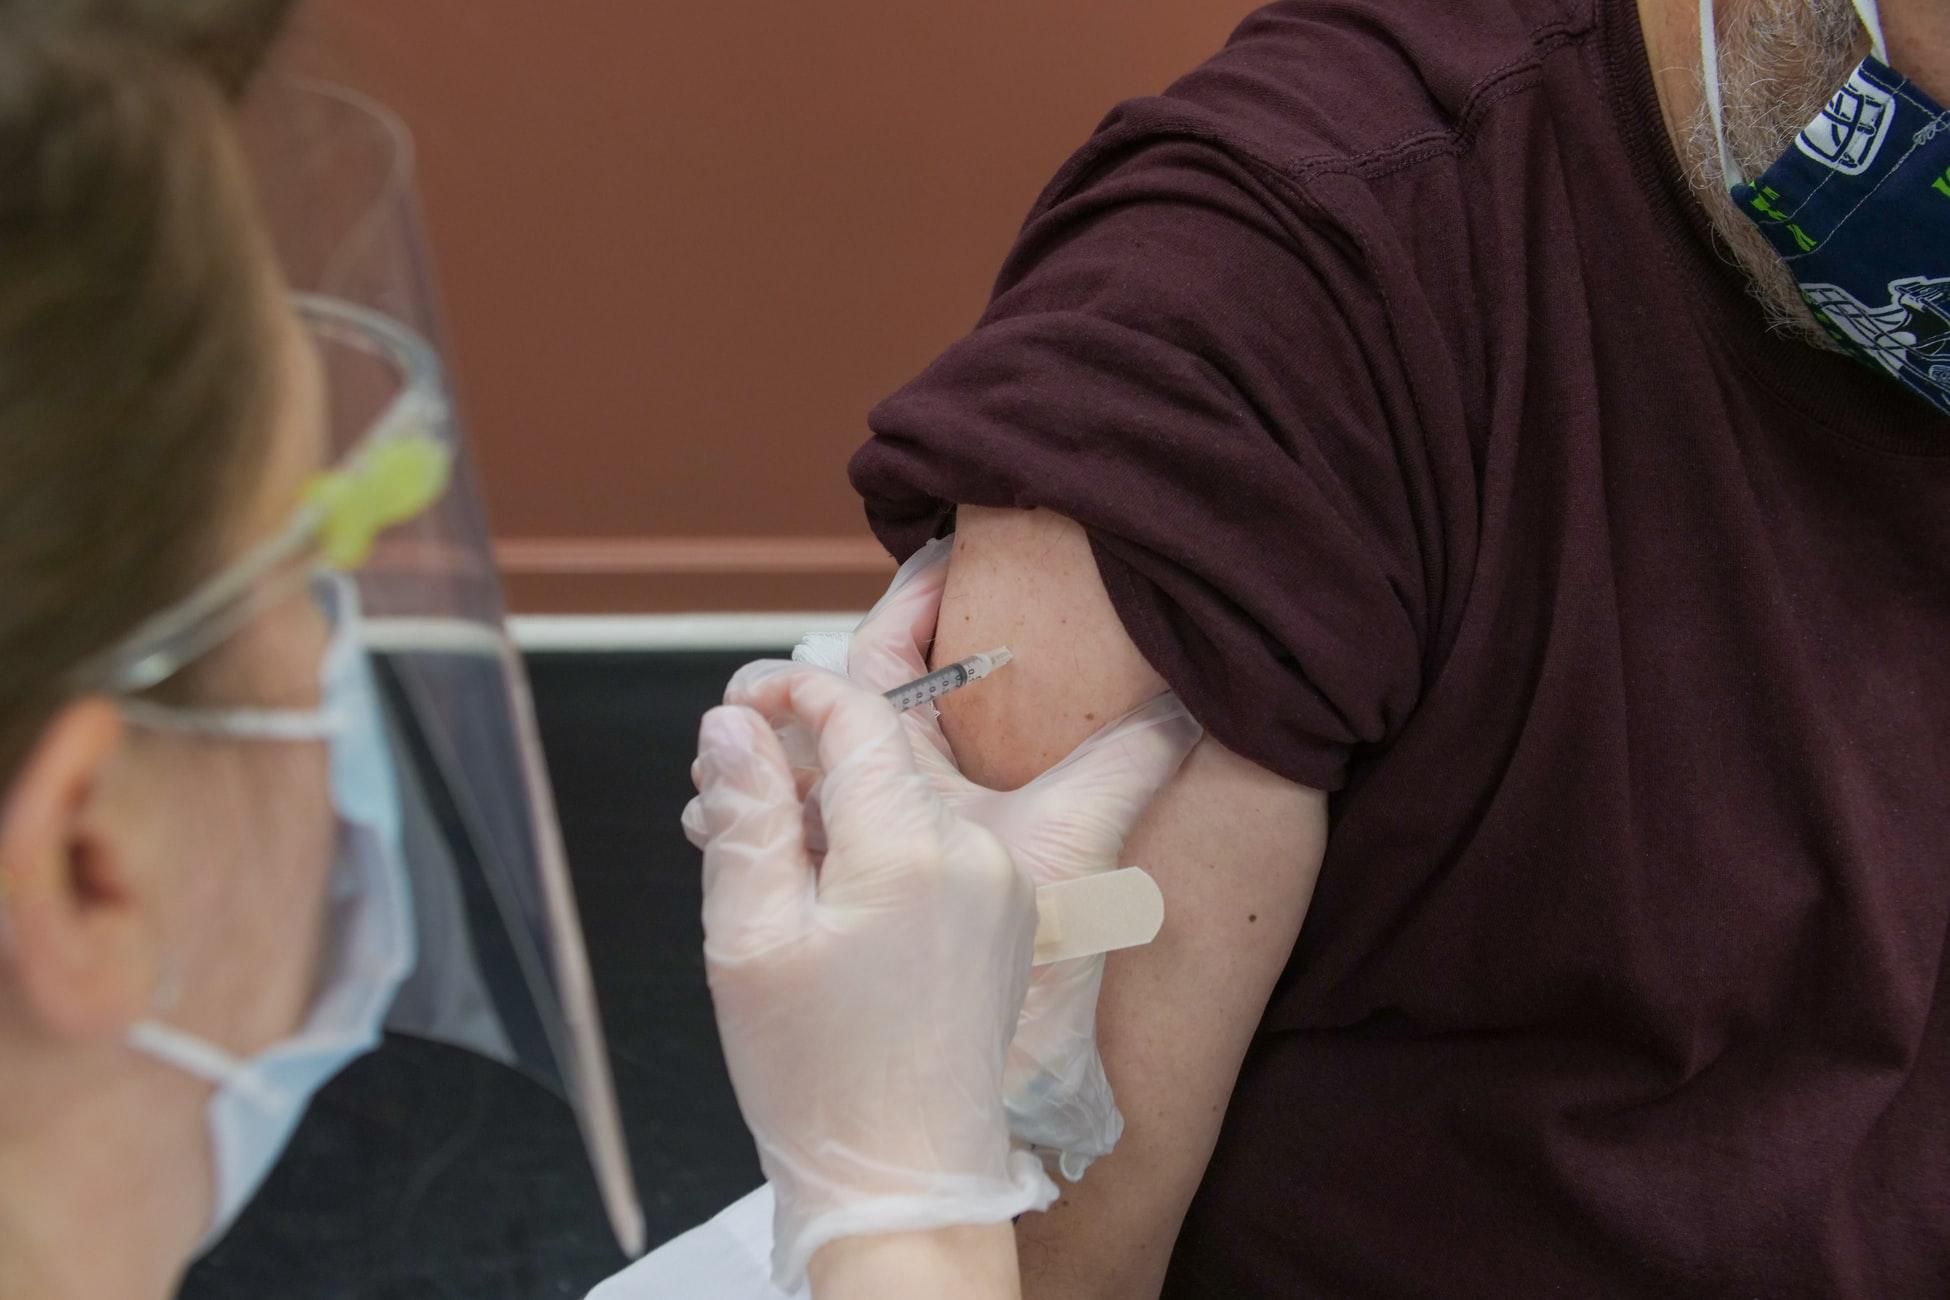 "Проривні інфекції": вчені пояснили, чому люди хворіють на коронавірус після вакцинації - Новини Здоров’я